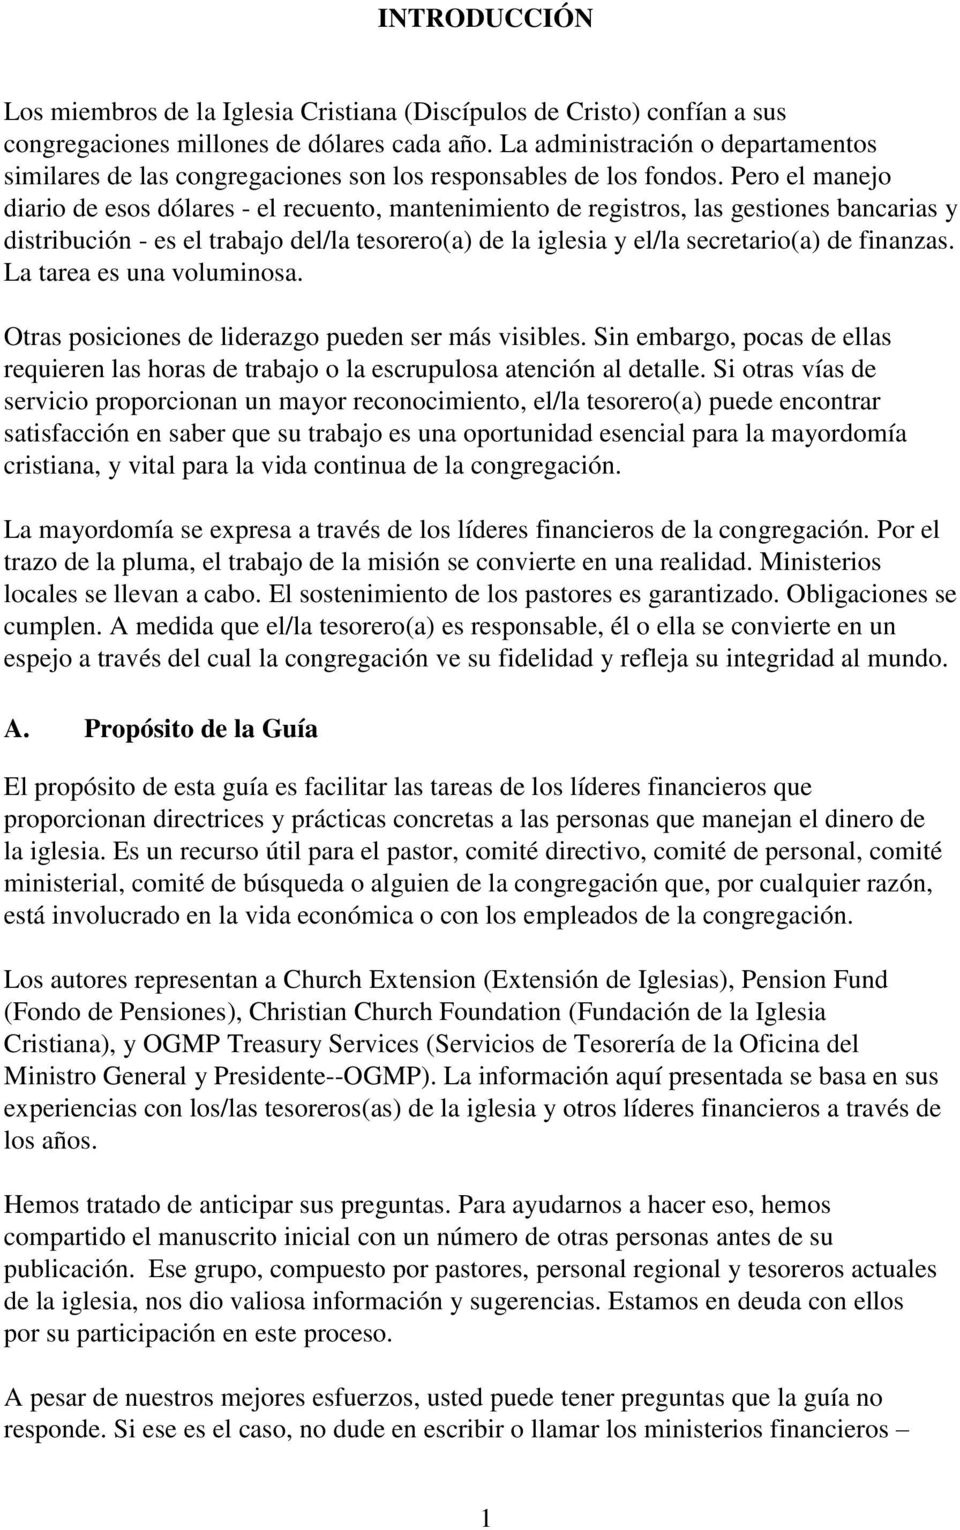 GUÍA PARA LOS TESOREROS DE LAS CONGREGACIONES DE IGLESIA CRISTIANA  (DISCÍPULOS DE CRISTO) - PDF Descargar libre